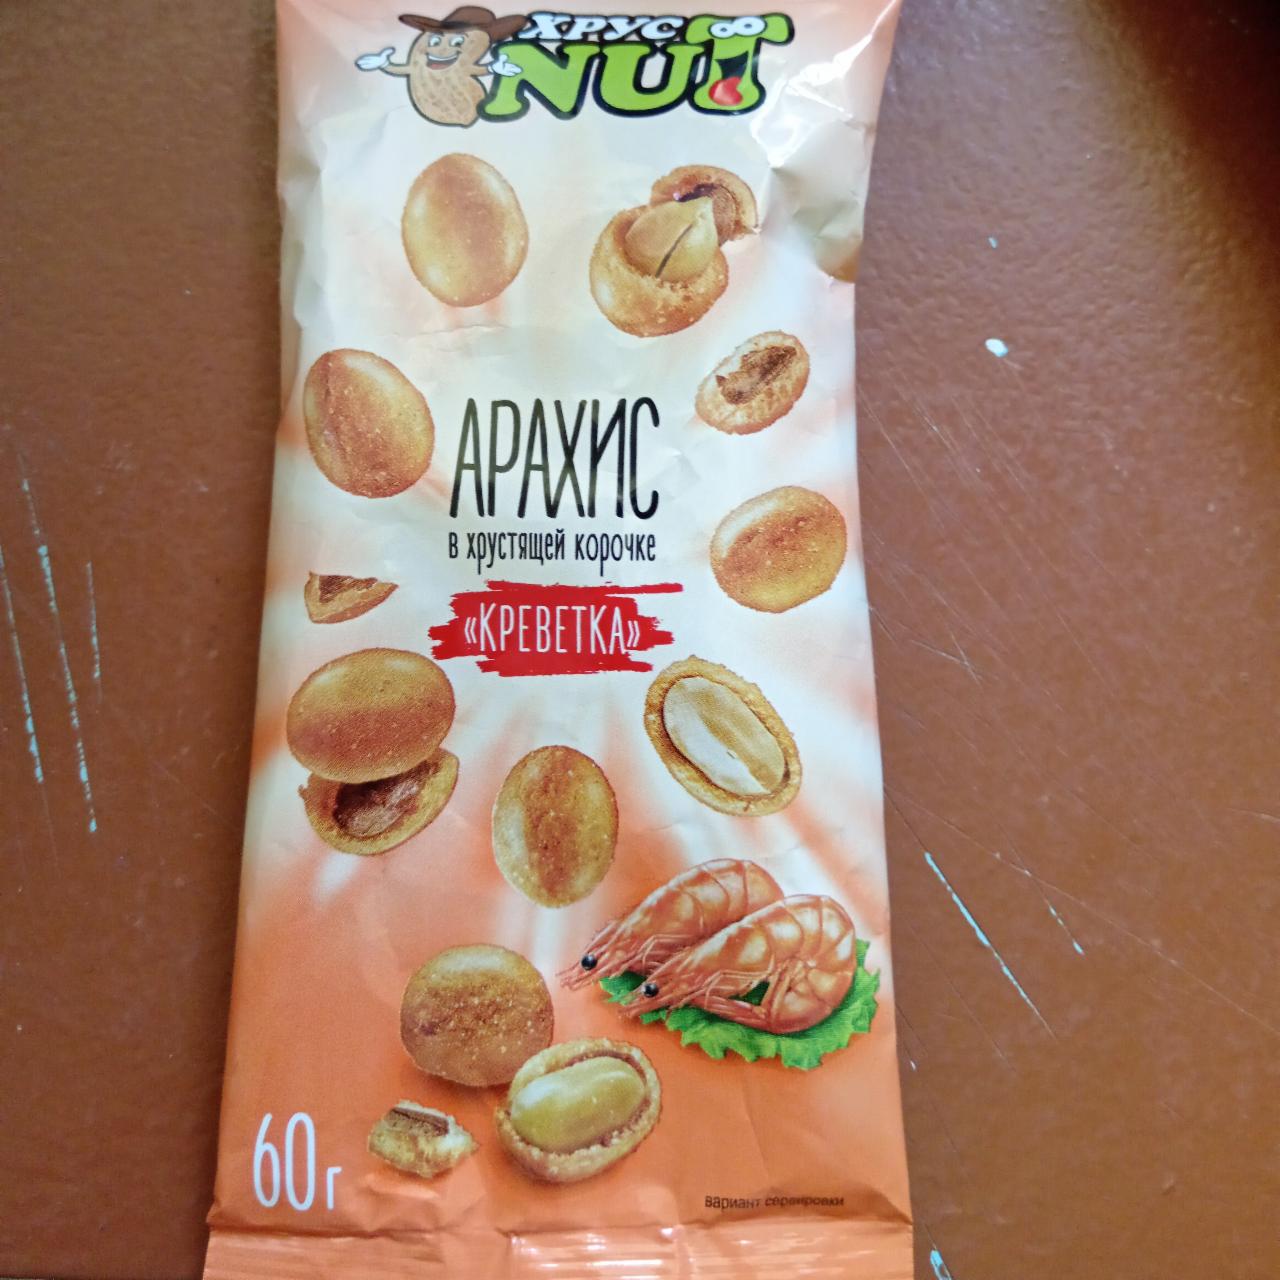 Фото - Арахис в хрустящей корочке со вкусом креветка ХустNut